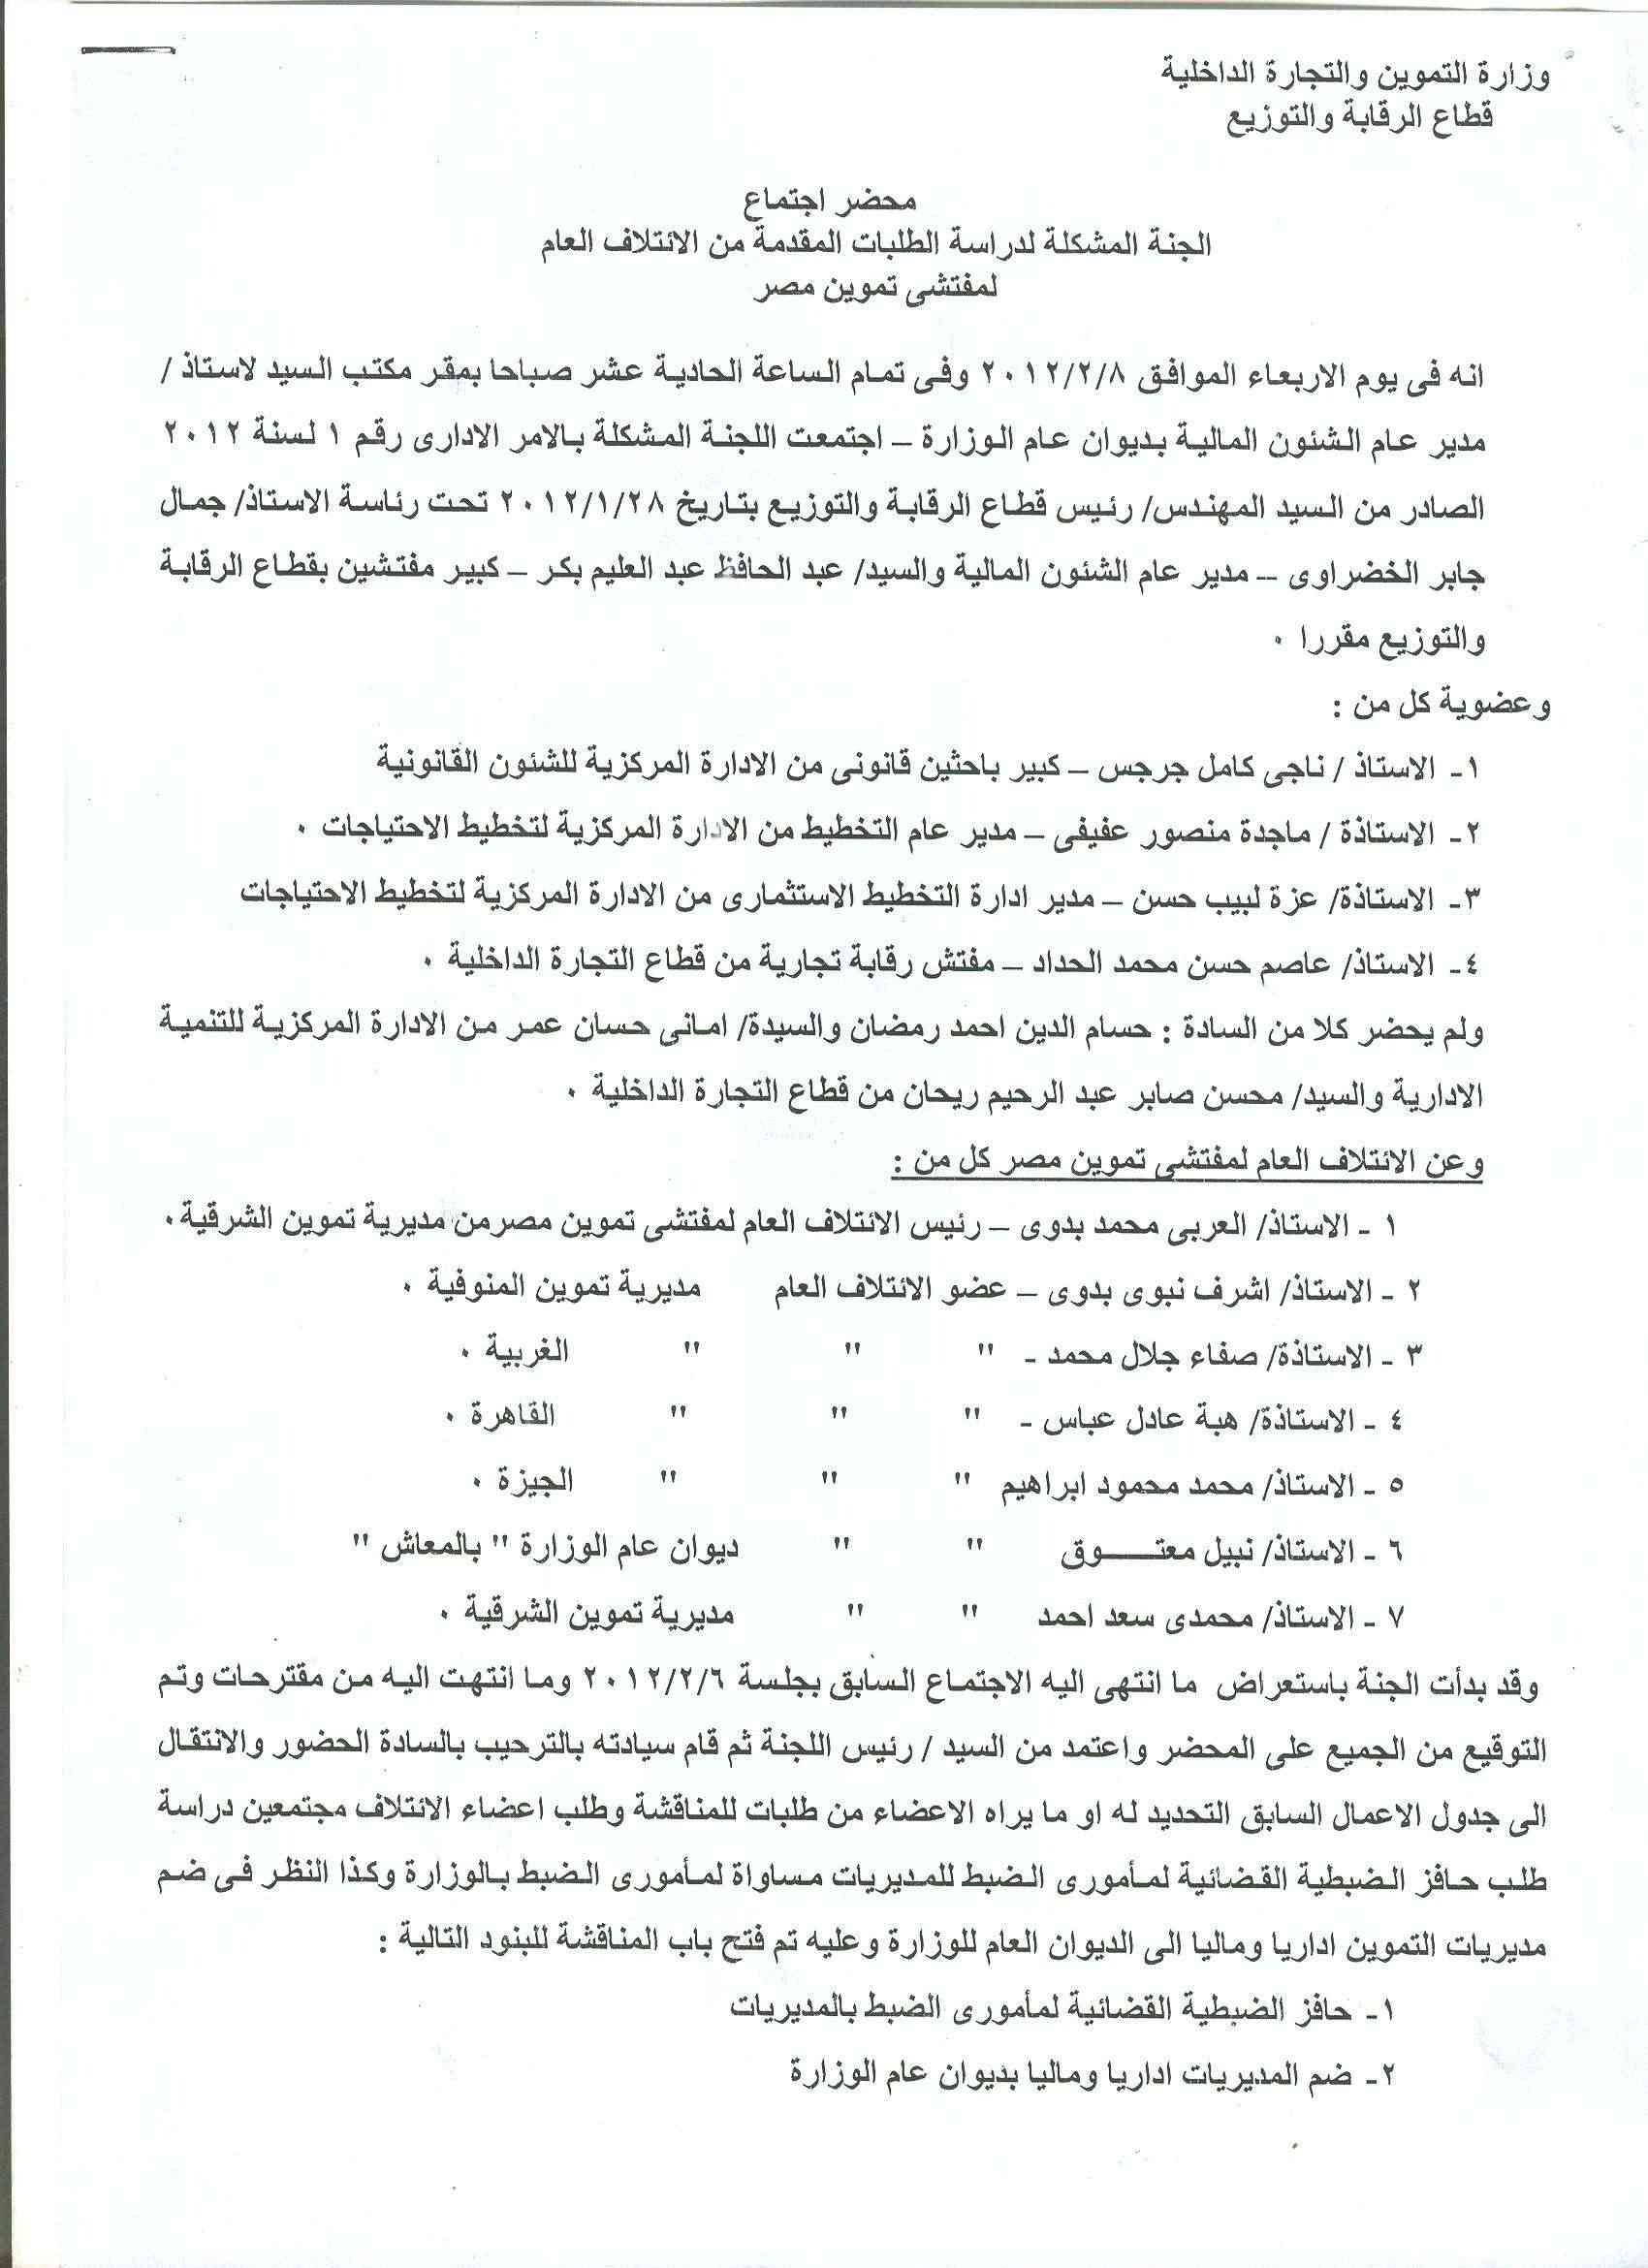 أعمال لجنة الإئتلاف العام للعاملين بتموين مصر بالوزاره خلال شهر فبراير 2012 - صفحة 2 8-110